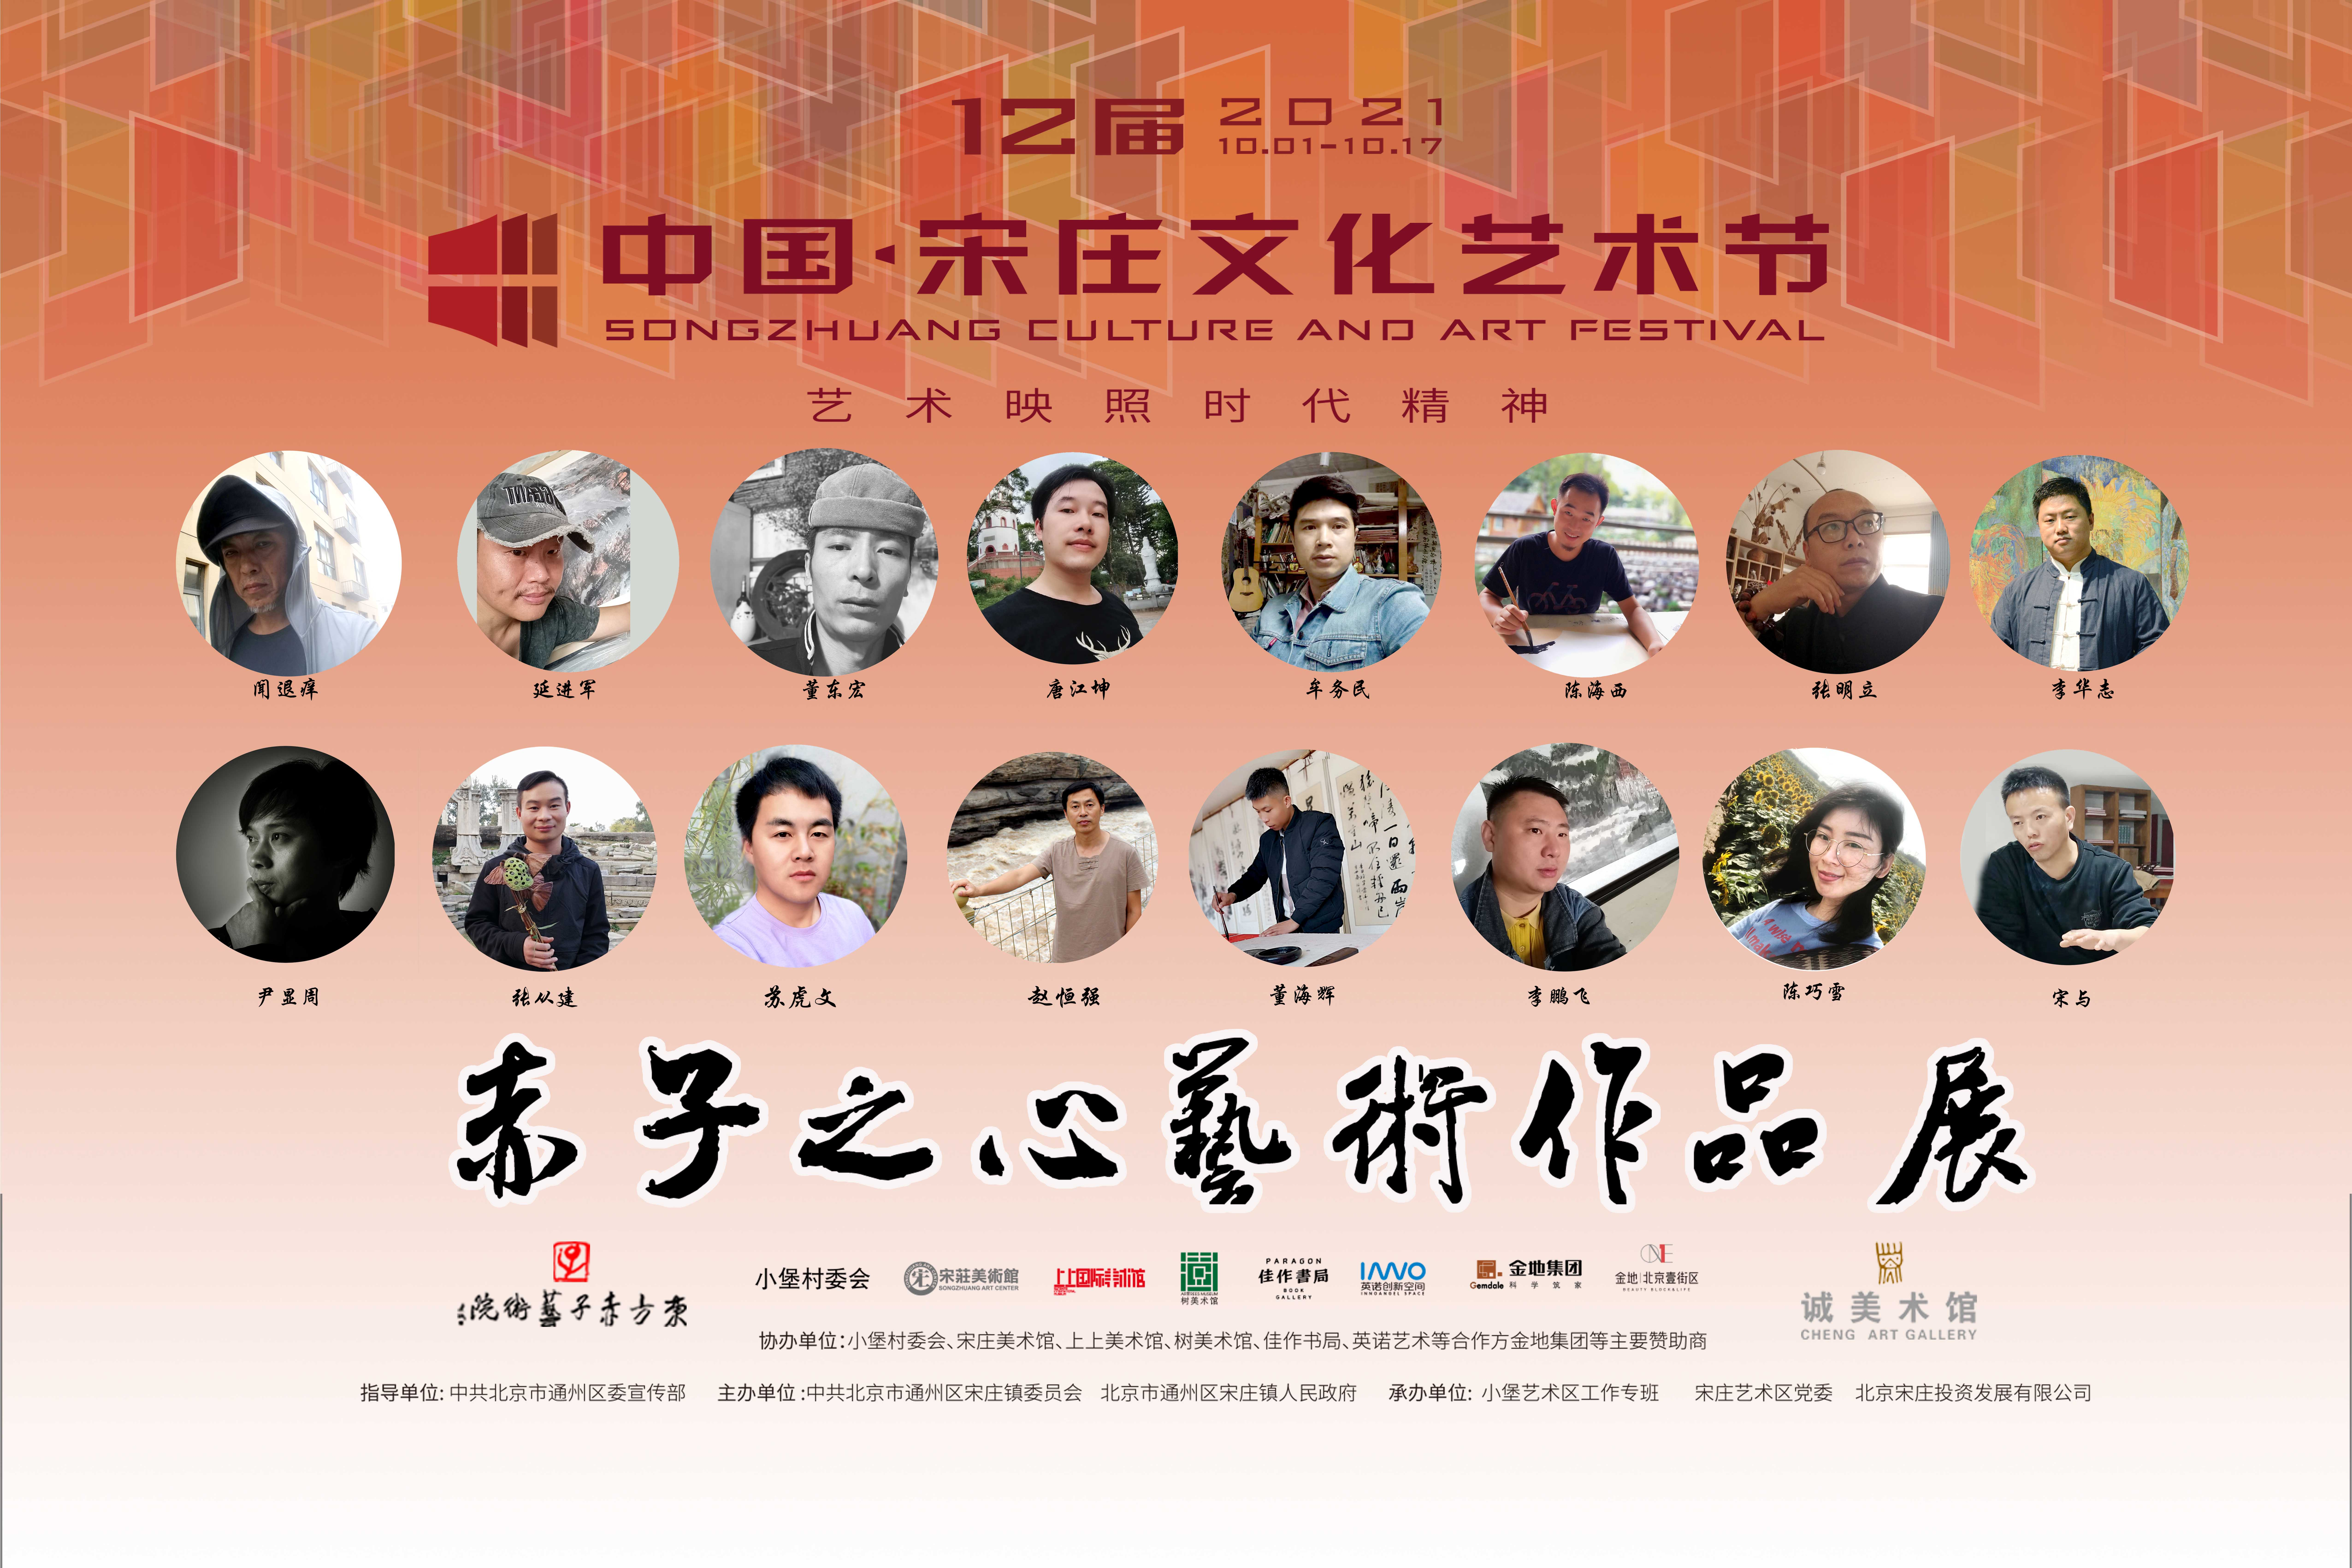 中国宋庄第十二届文化艺术节分会场——赤子之心艺术作品展